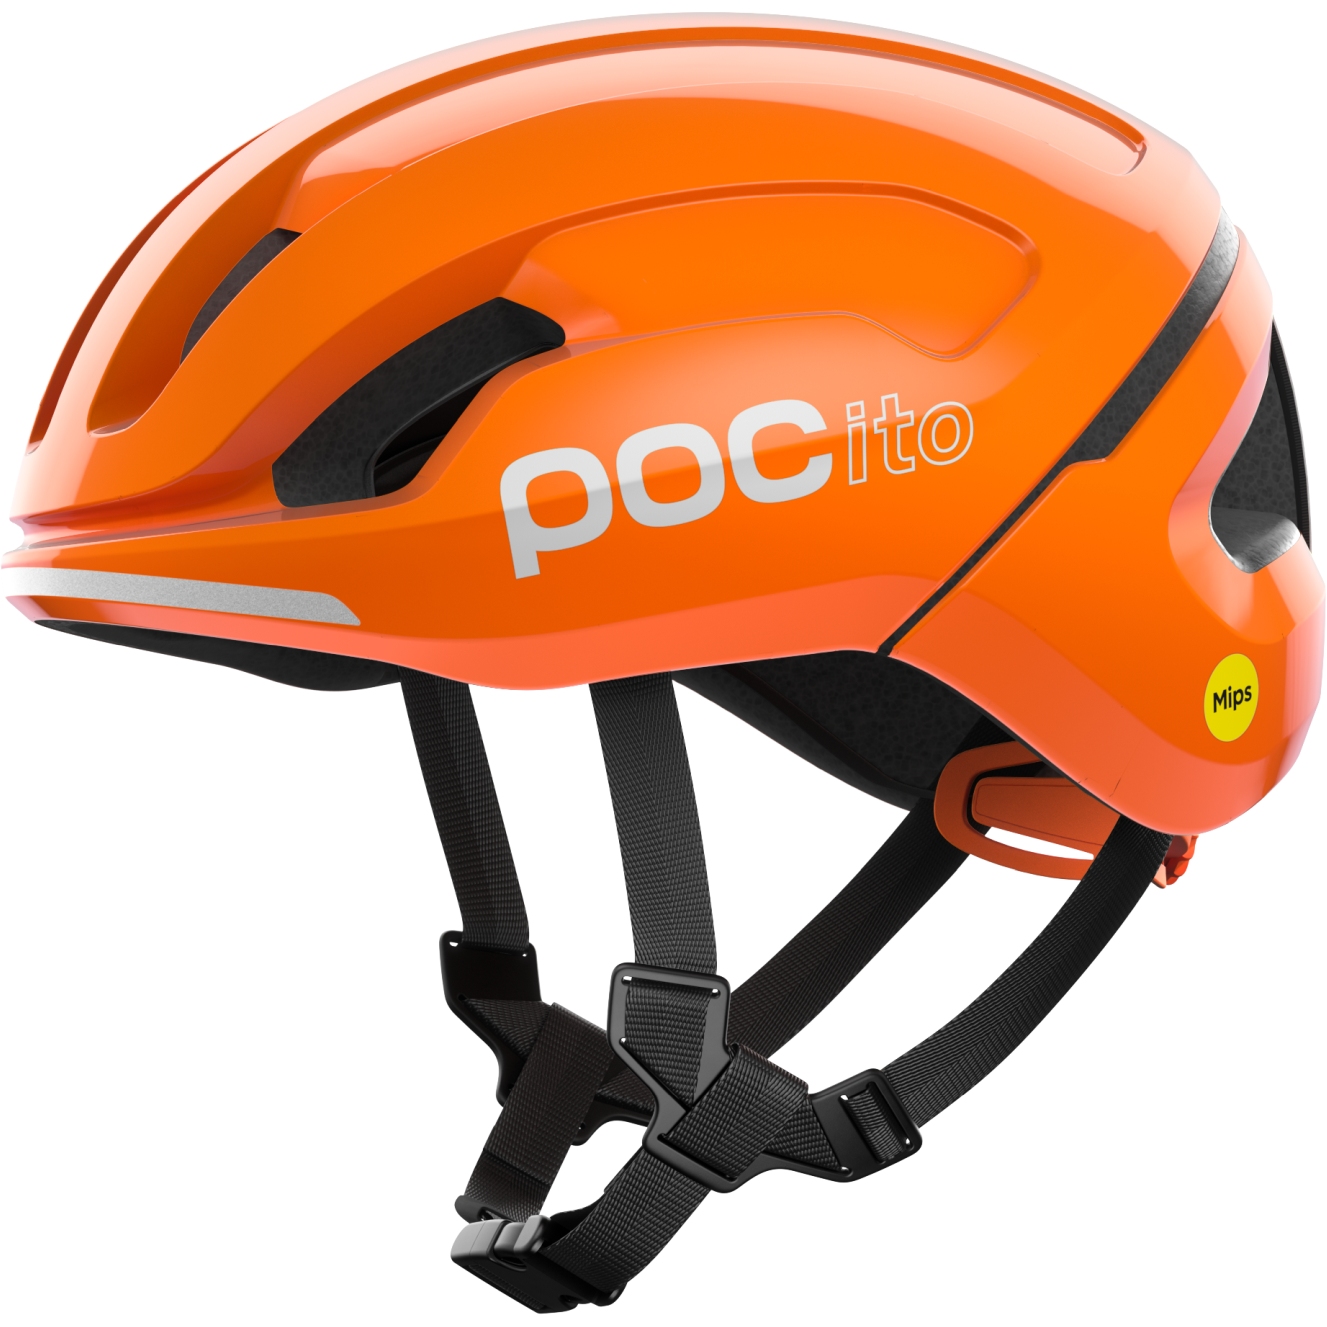 Produktbild von POC Pocito Omne MIPS Kinderhelm - 9050 fluorescent orange